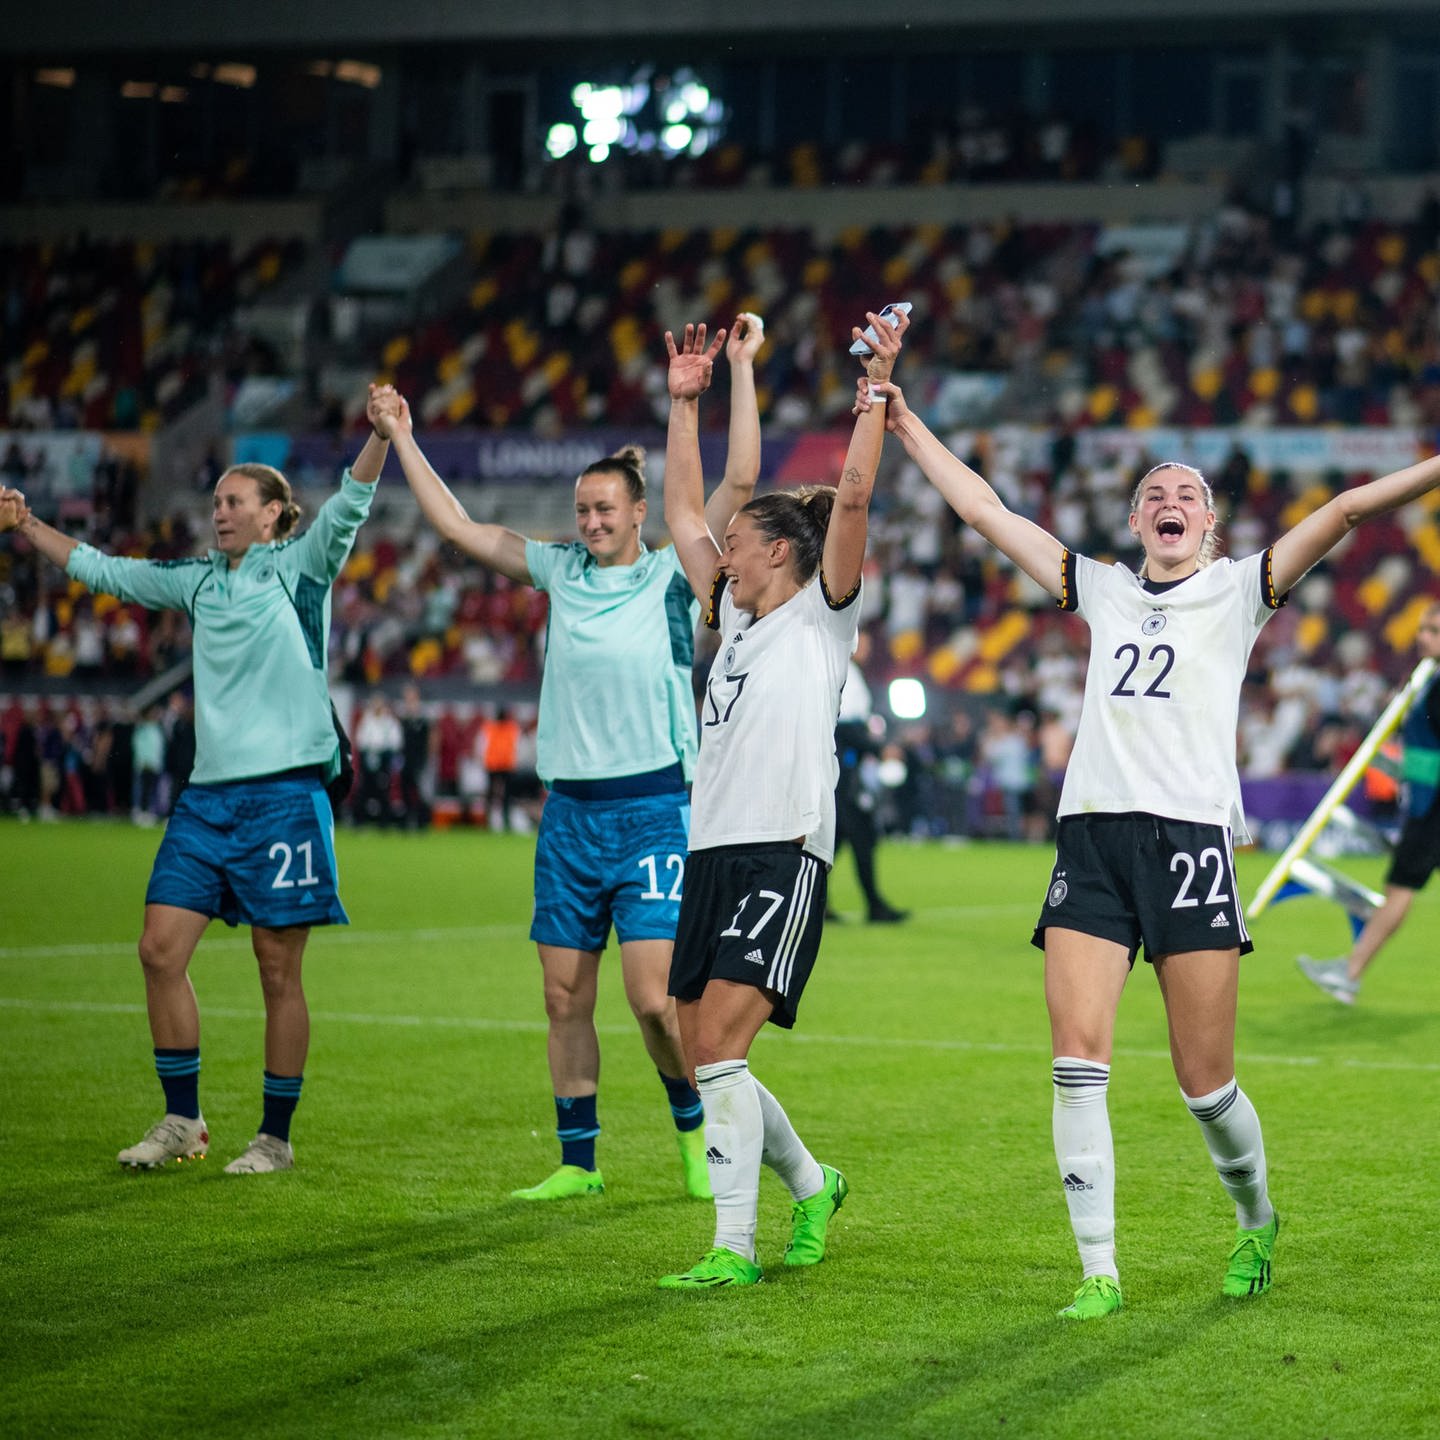 Nach der EM Wie steht es um Frauenfußball in Rheinland-Pfalz? - Fußball